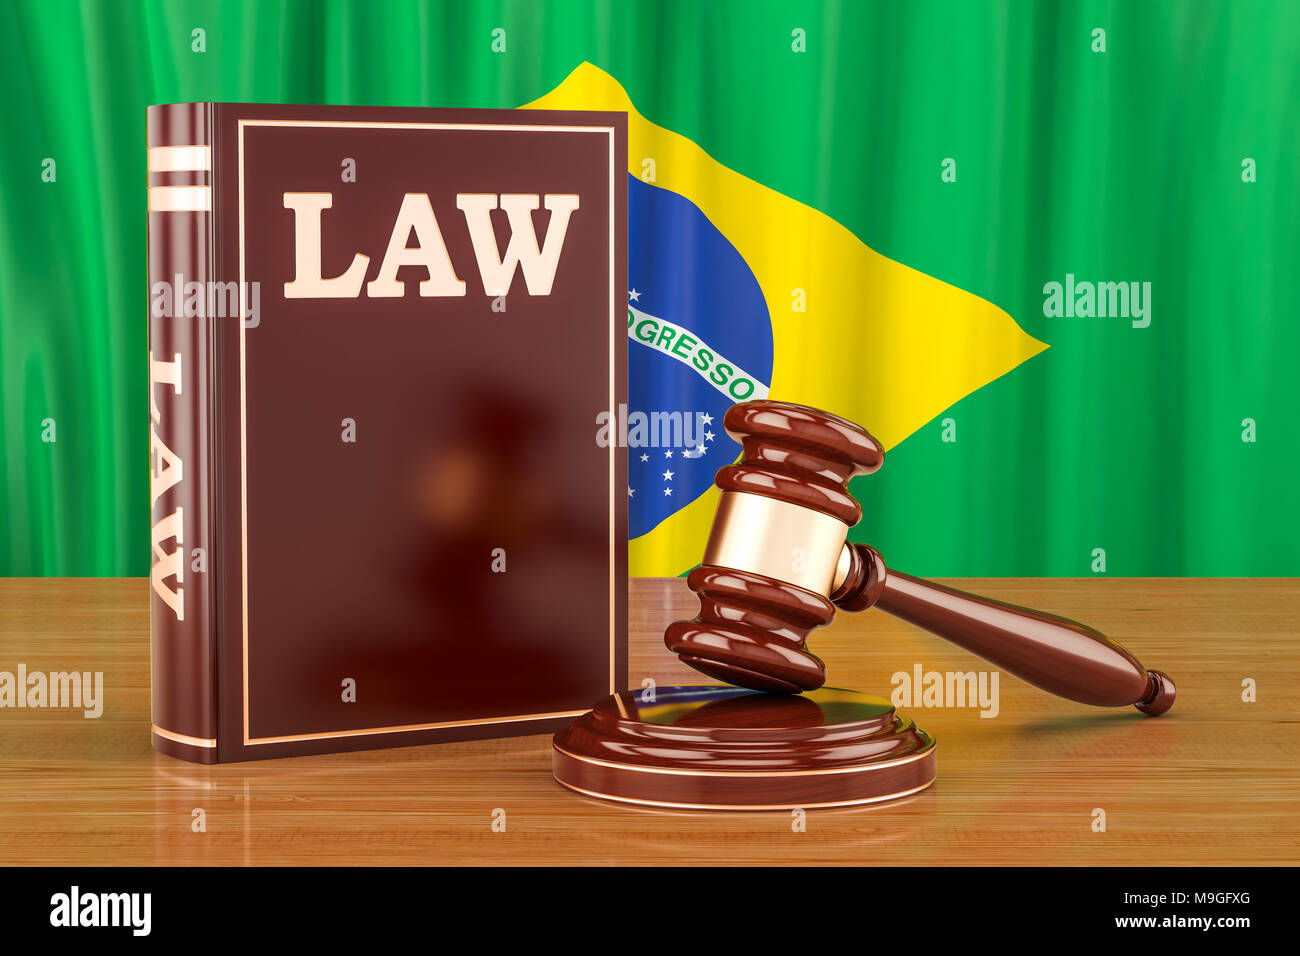 Brasilianisches Recht und Gerechtigkeit Konzept, 3D-Rendering Stockfoto